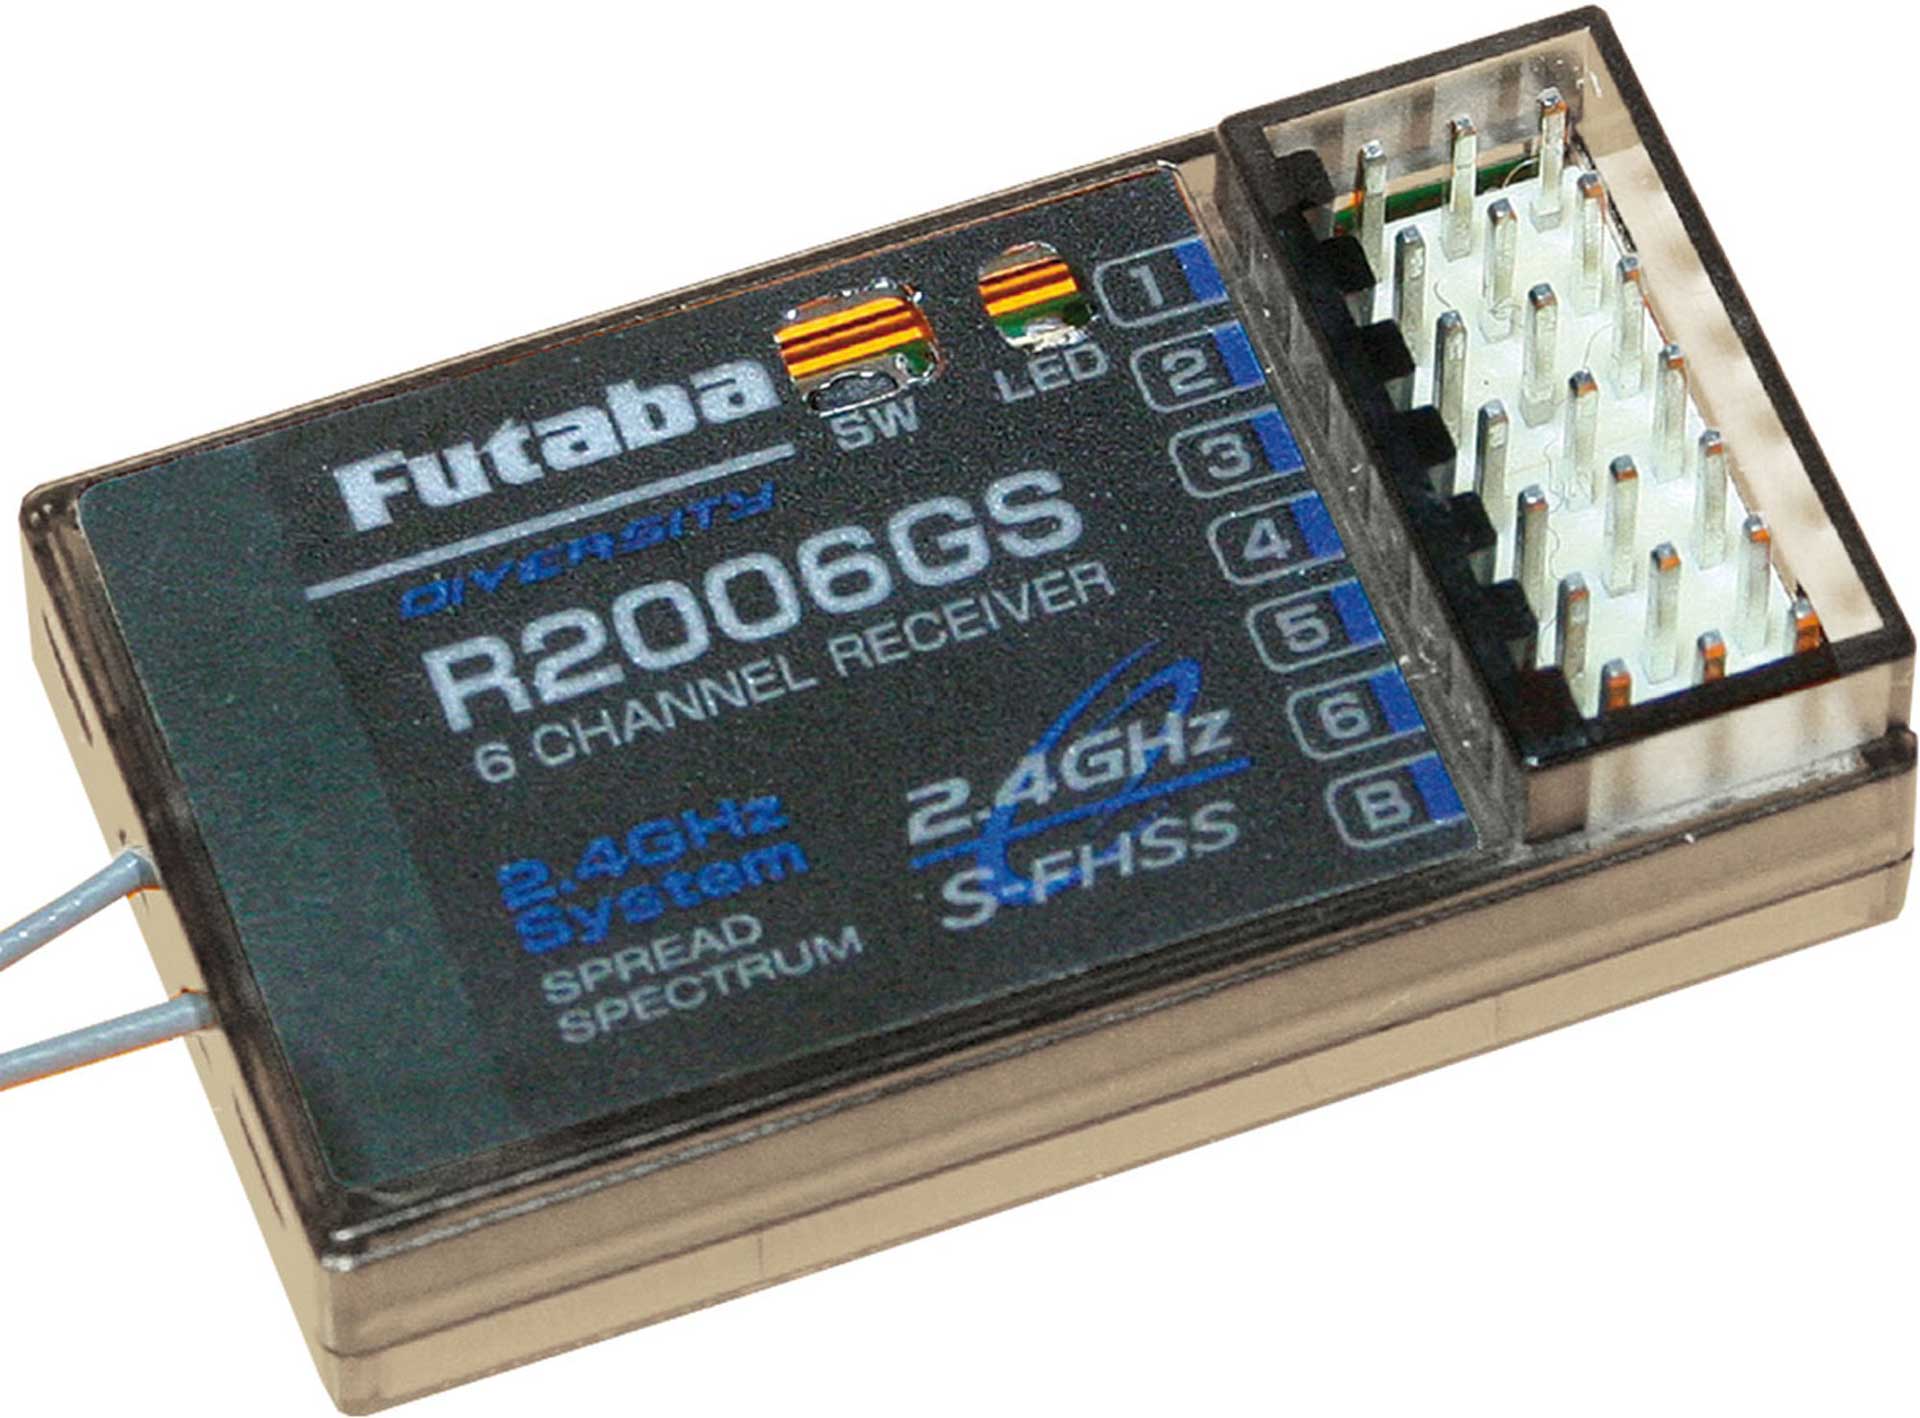 FUTABA R2006GS 2,4GHZ FHSS/S-FHSS 6K RECEIVER NOT FASST/FASSTEST COMPATIBLE!